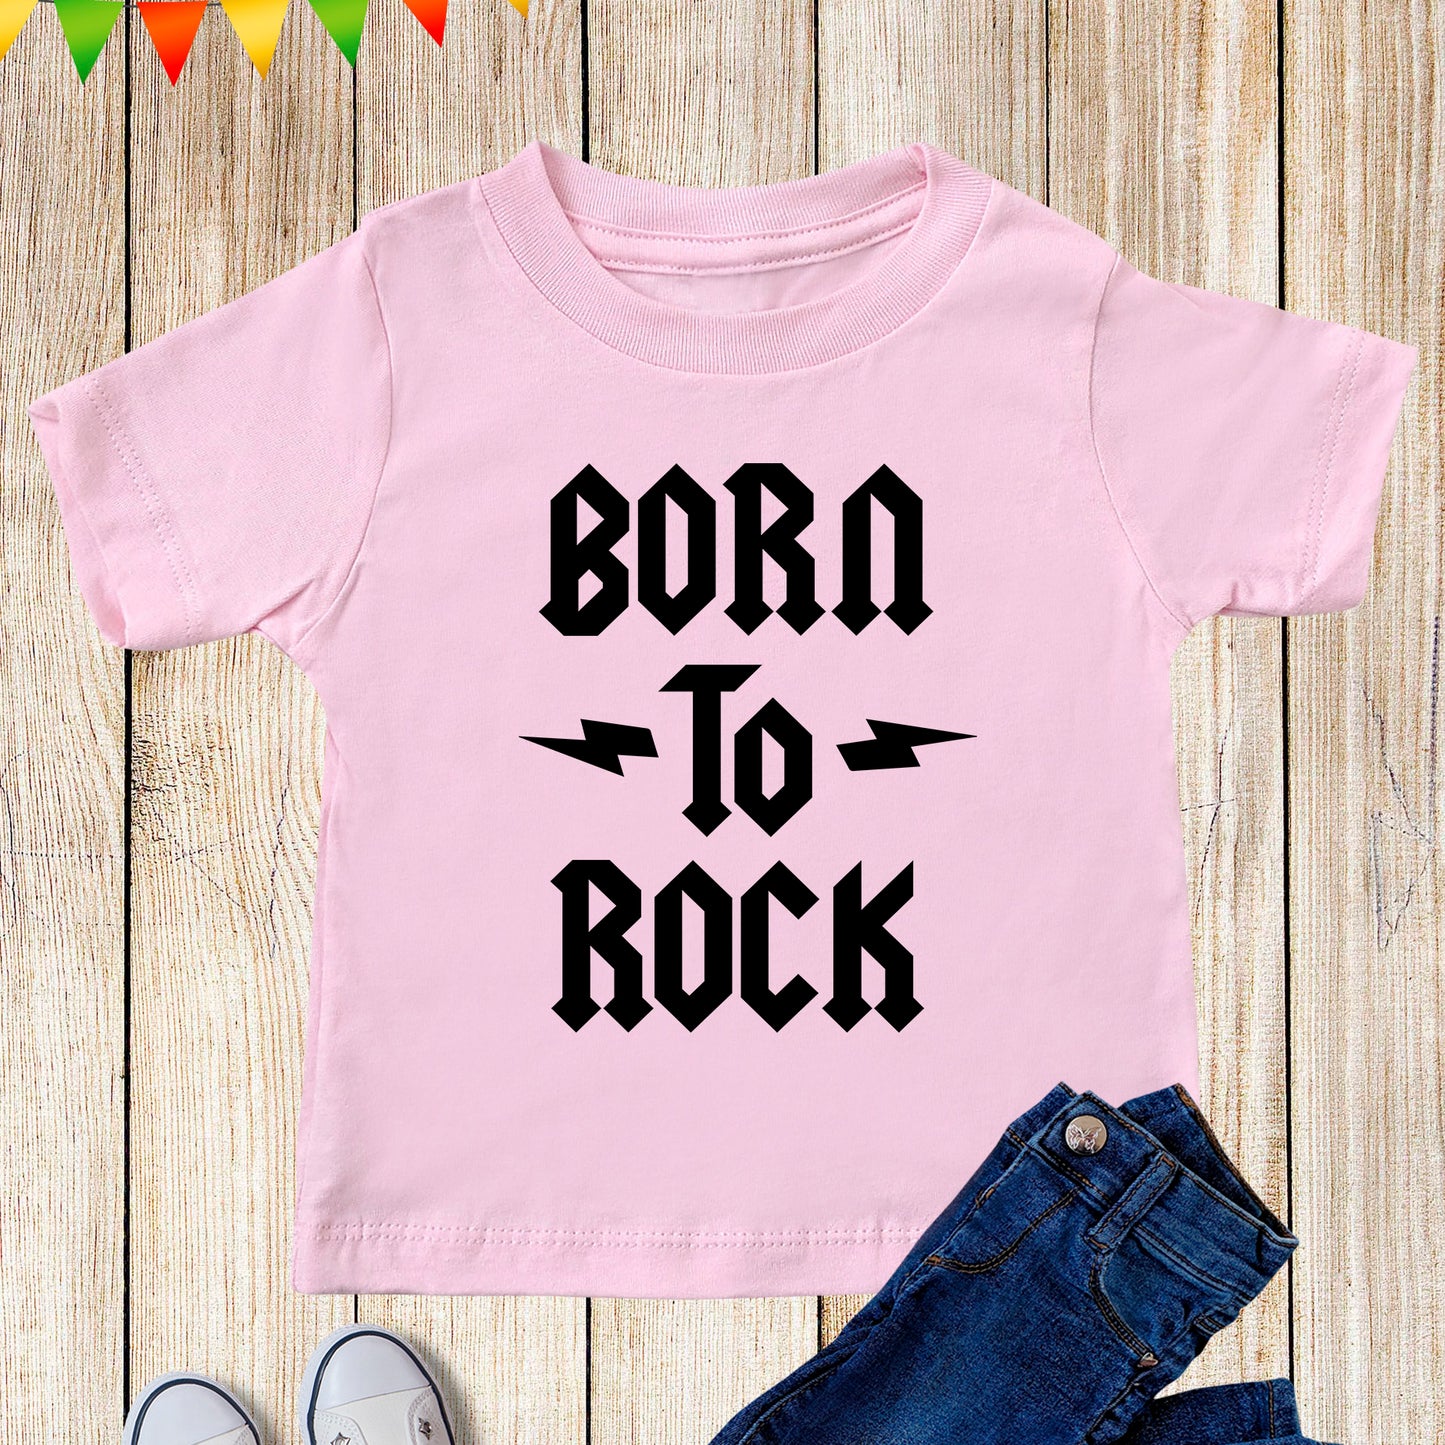 Rock Kids Clothes